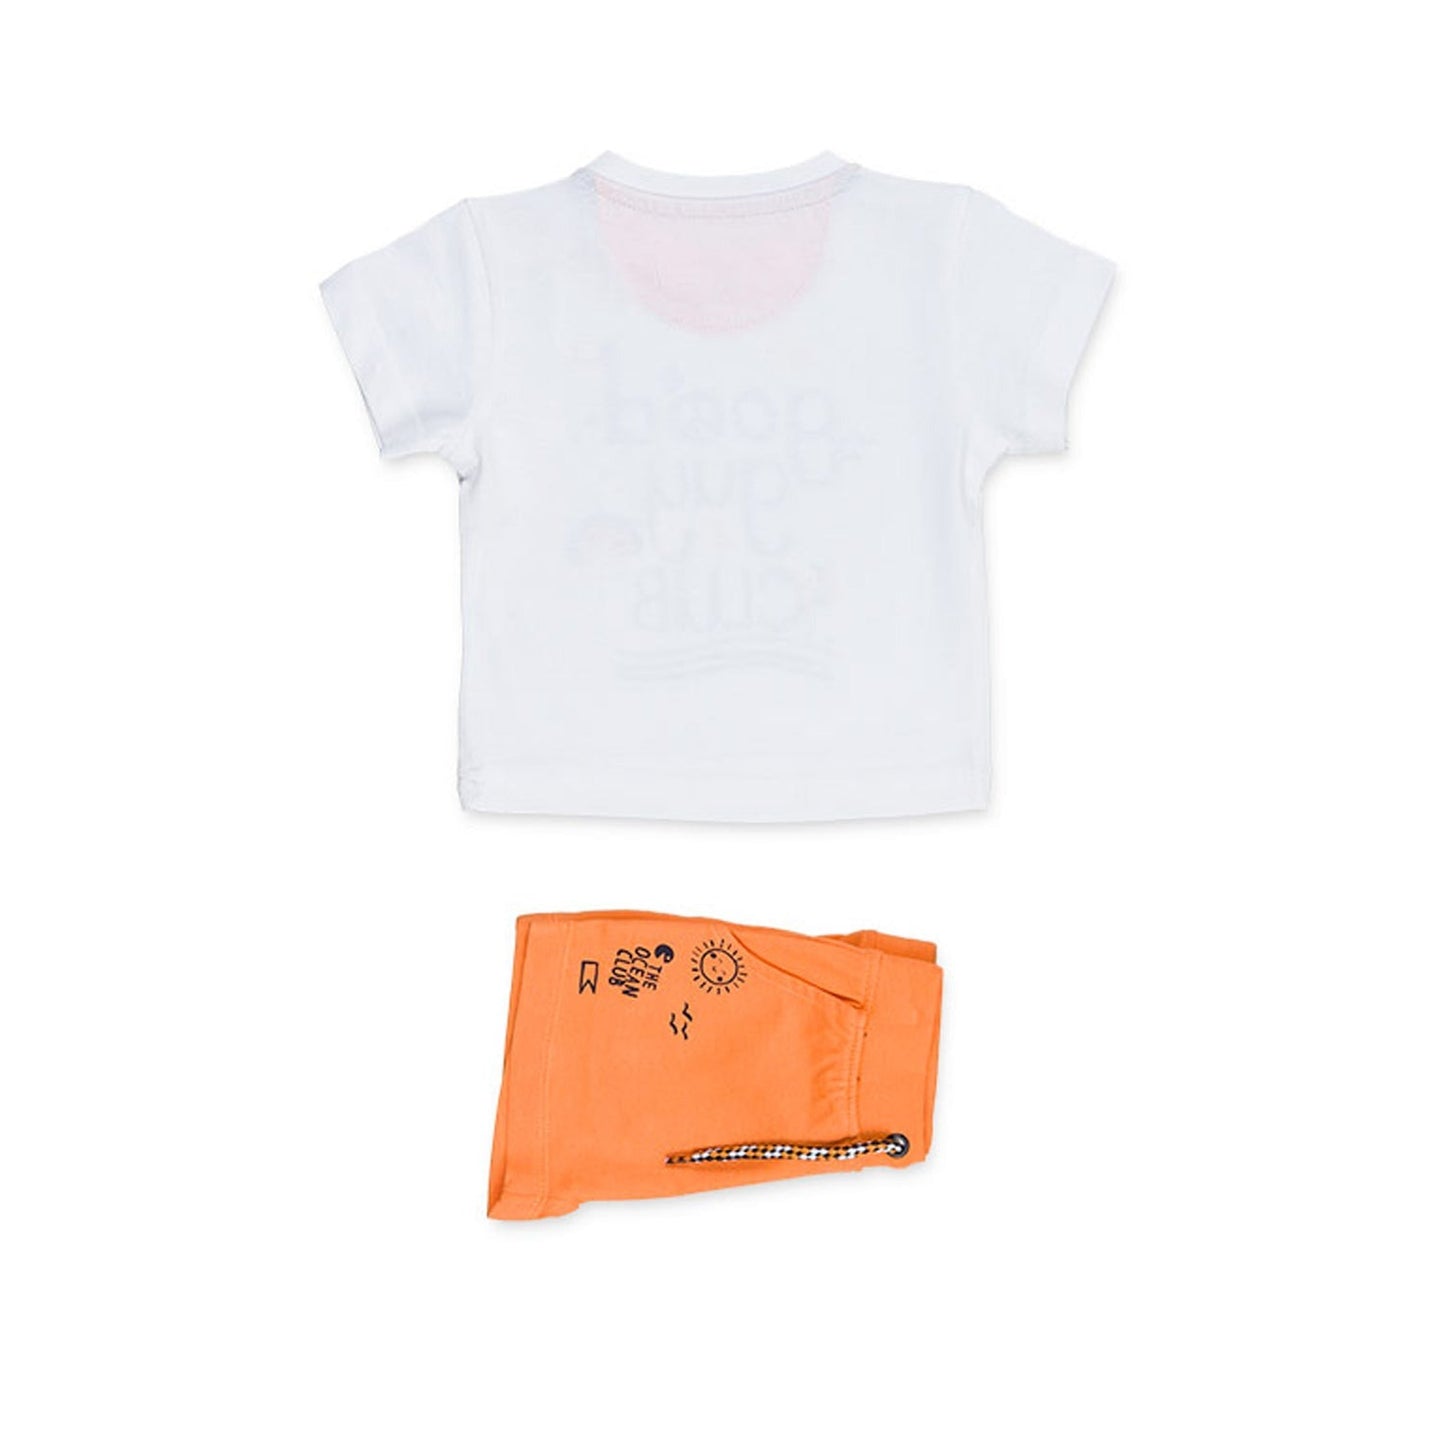 Losan - Completo Maglietta e Bermuda Arancioni Baby Bambino